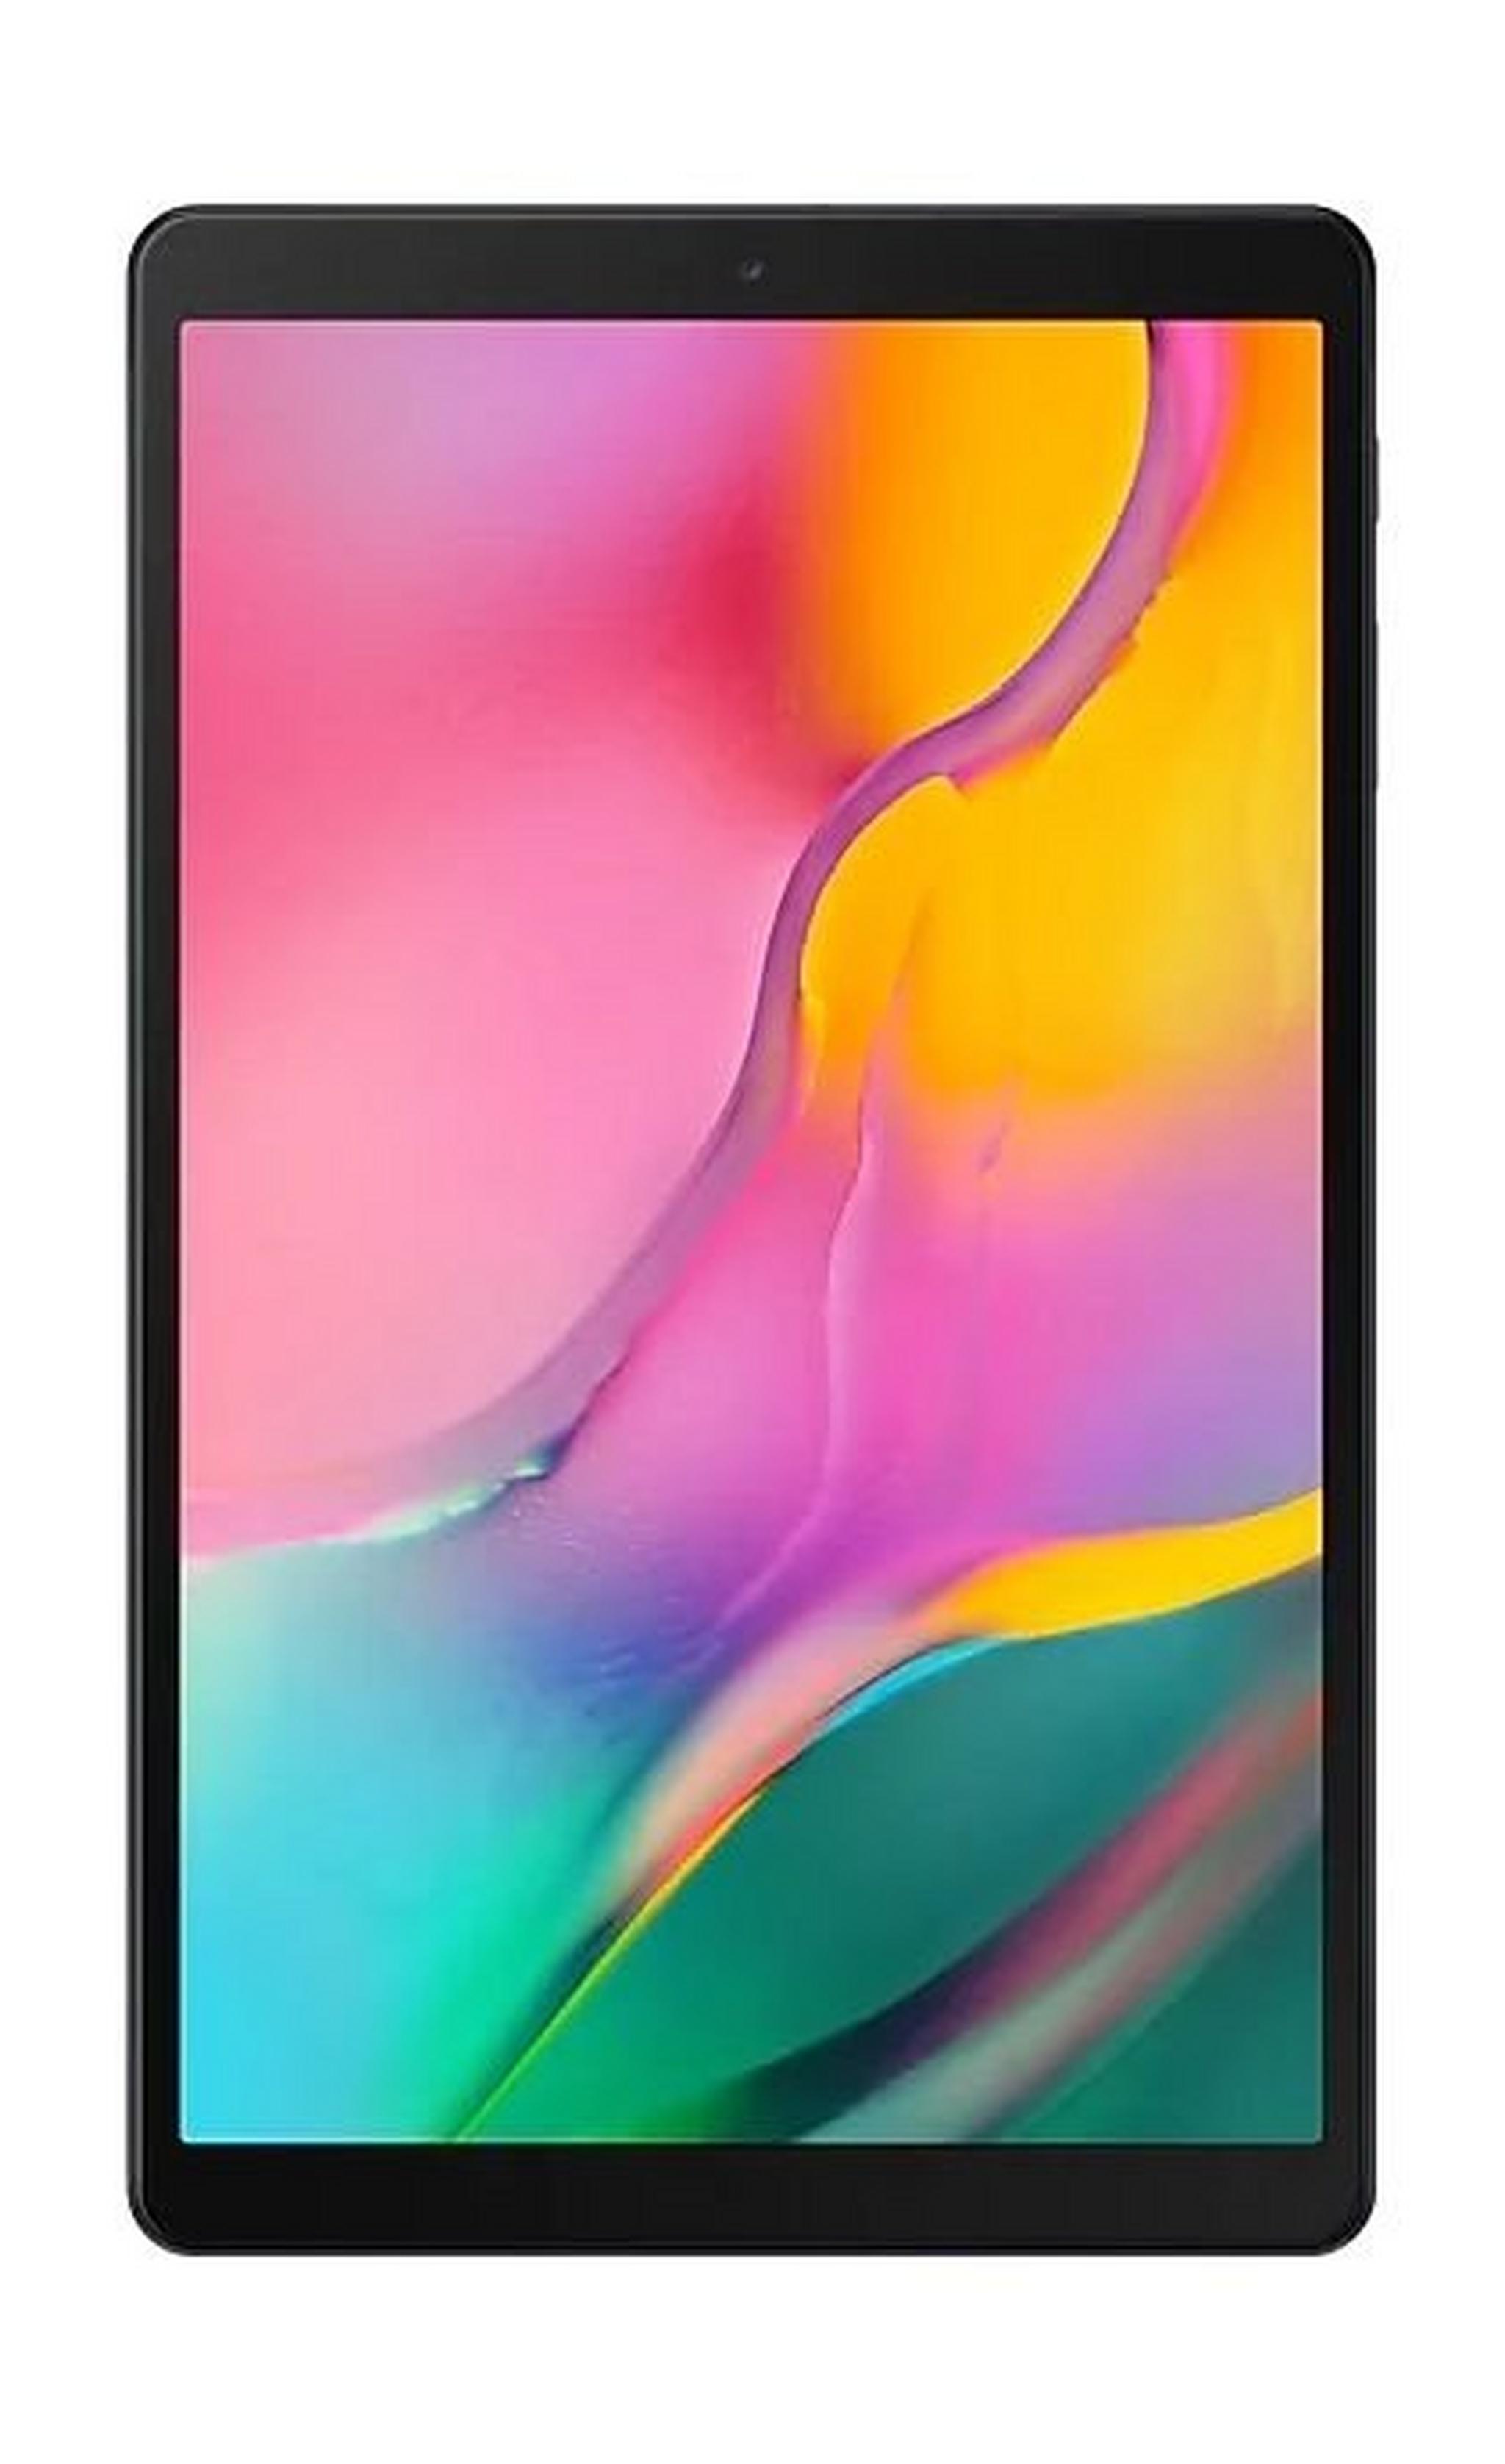 Samsung Galaxy Tab A 2019 10.1-inch 32GB 4G LTE Tablet - Gold